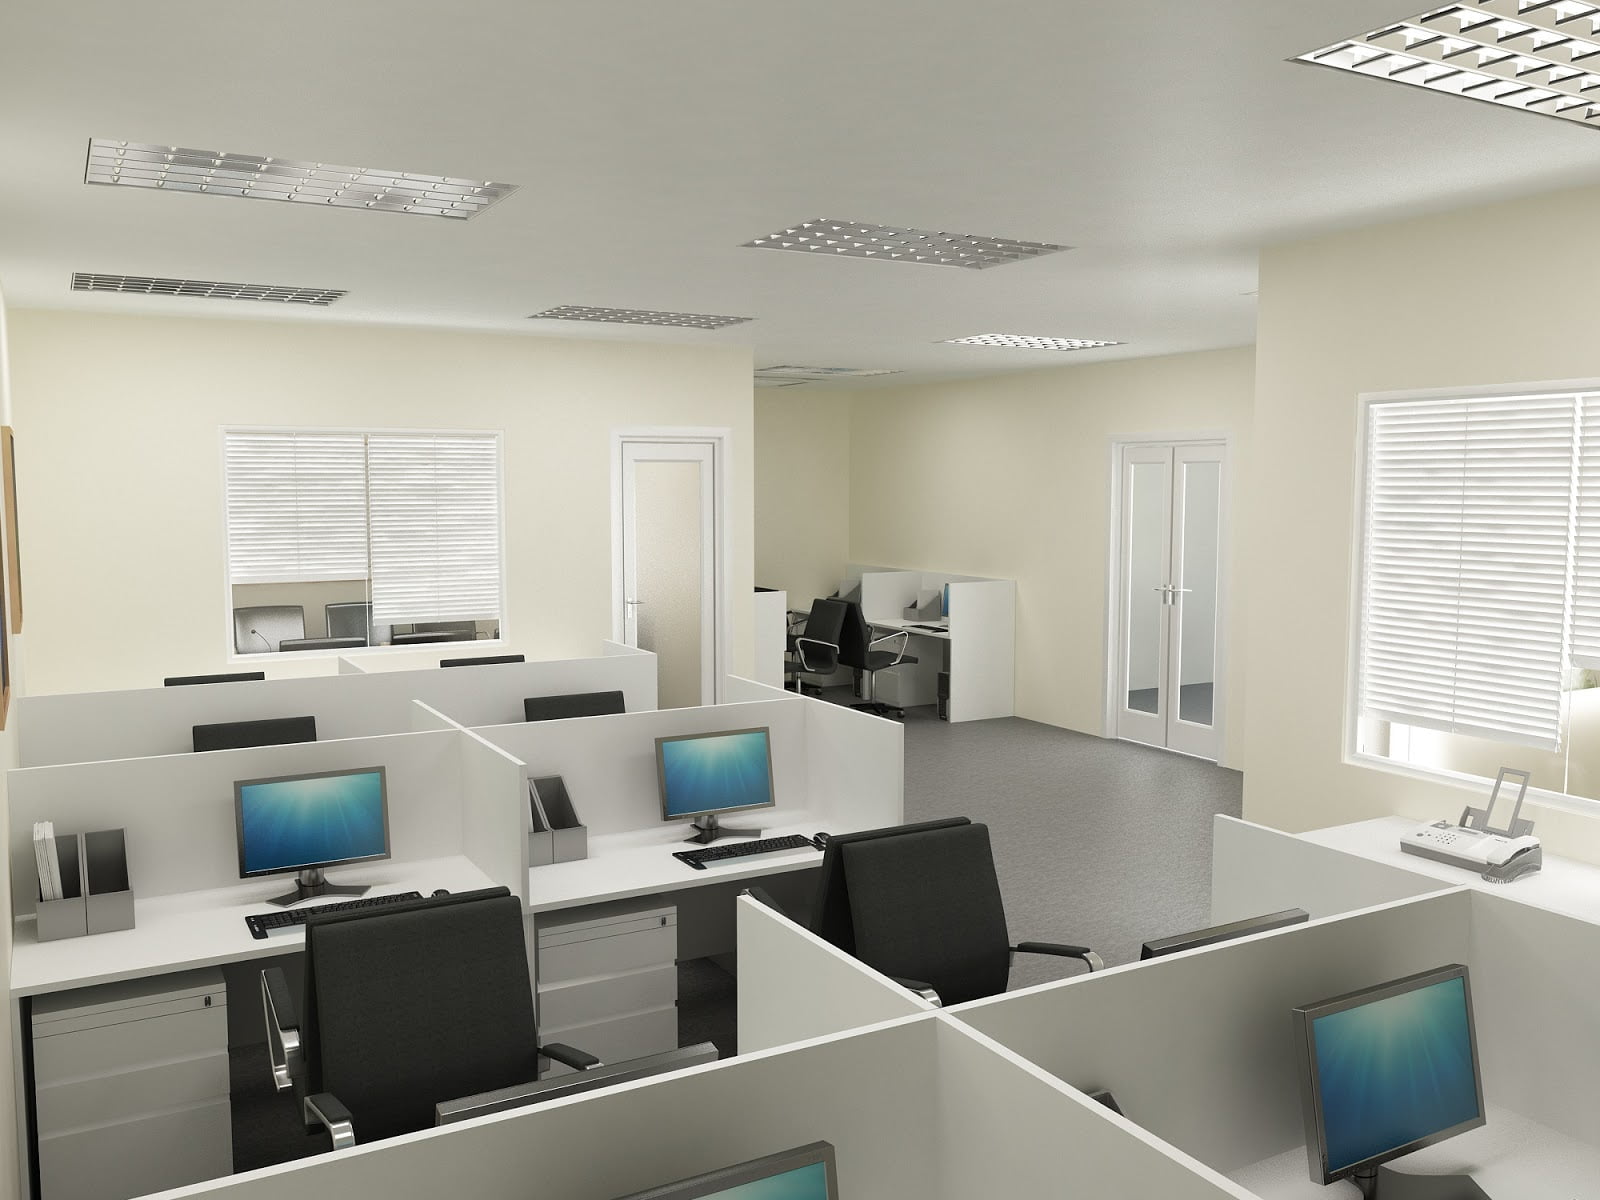 Thiết kế hệ thống chiếu sáng phù hợp và tạo môi trường trong lành cho phòng làm việc